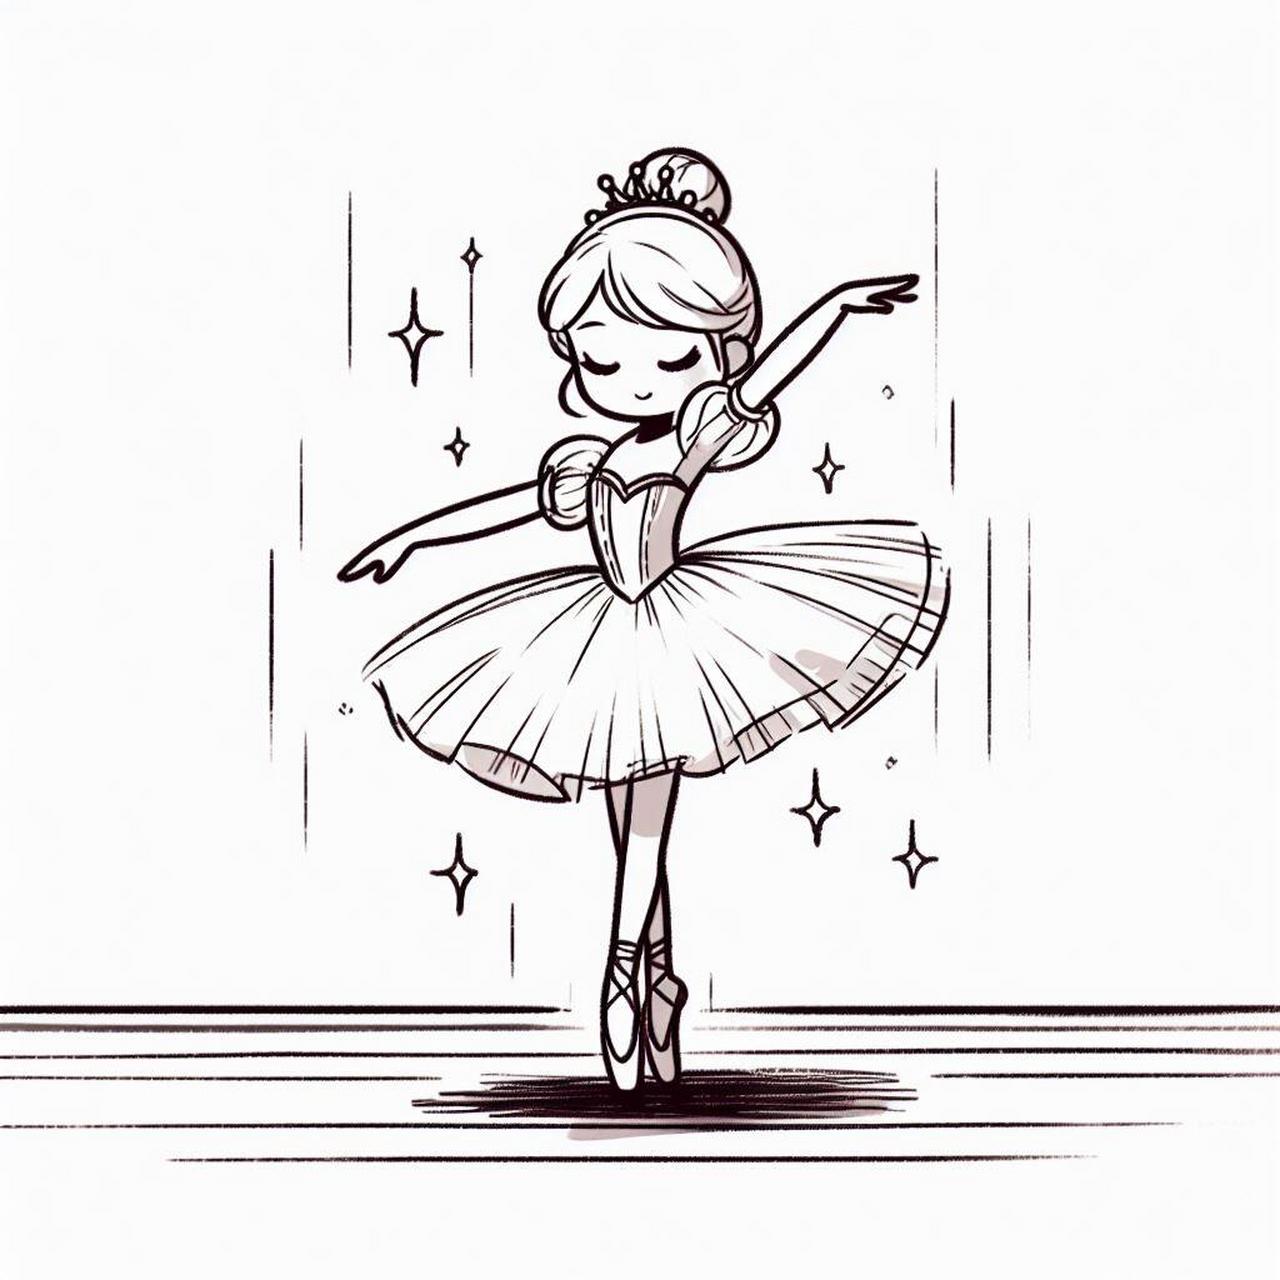 芭蕾舞女孩简笔画可爱图片